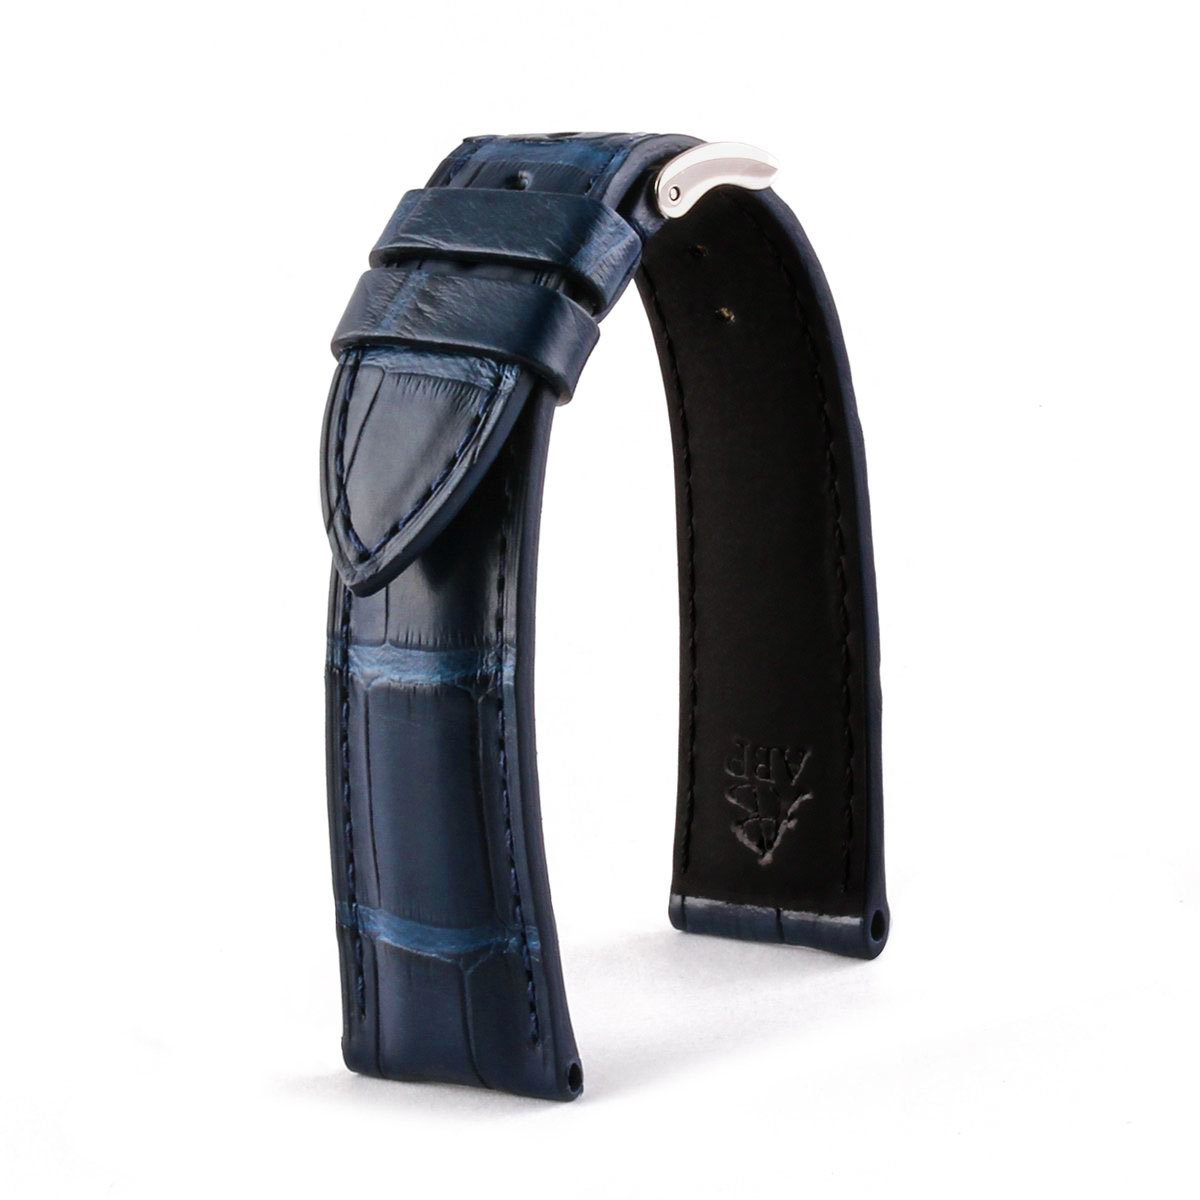 Bracelet classique "Essential" - Bracelet de montre cuir - Alligator (noir, marron, gris, bleu) - watch band leather strap - ABP Concept -